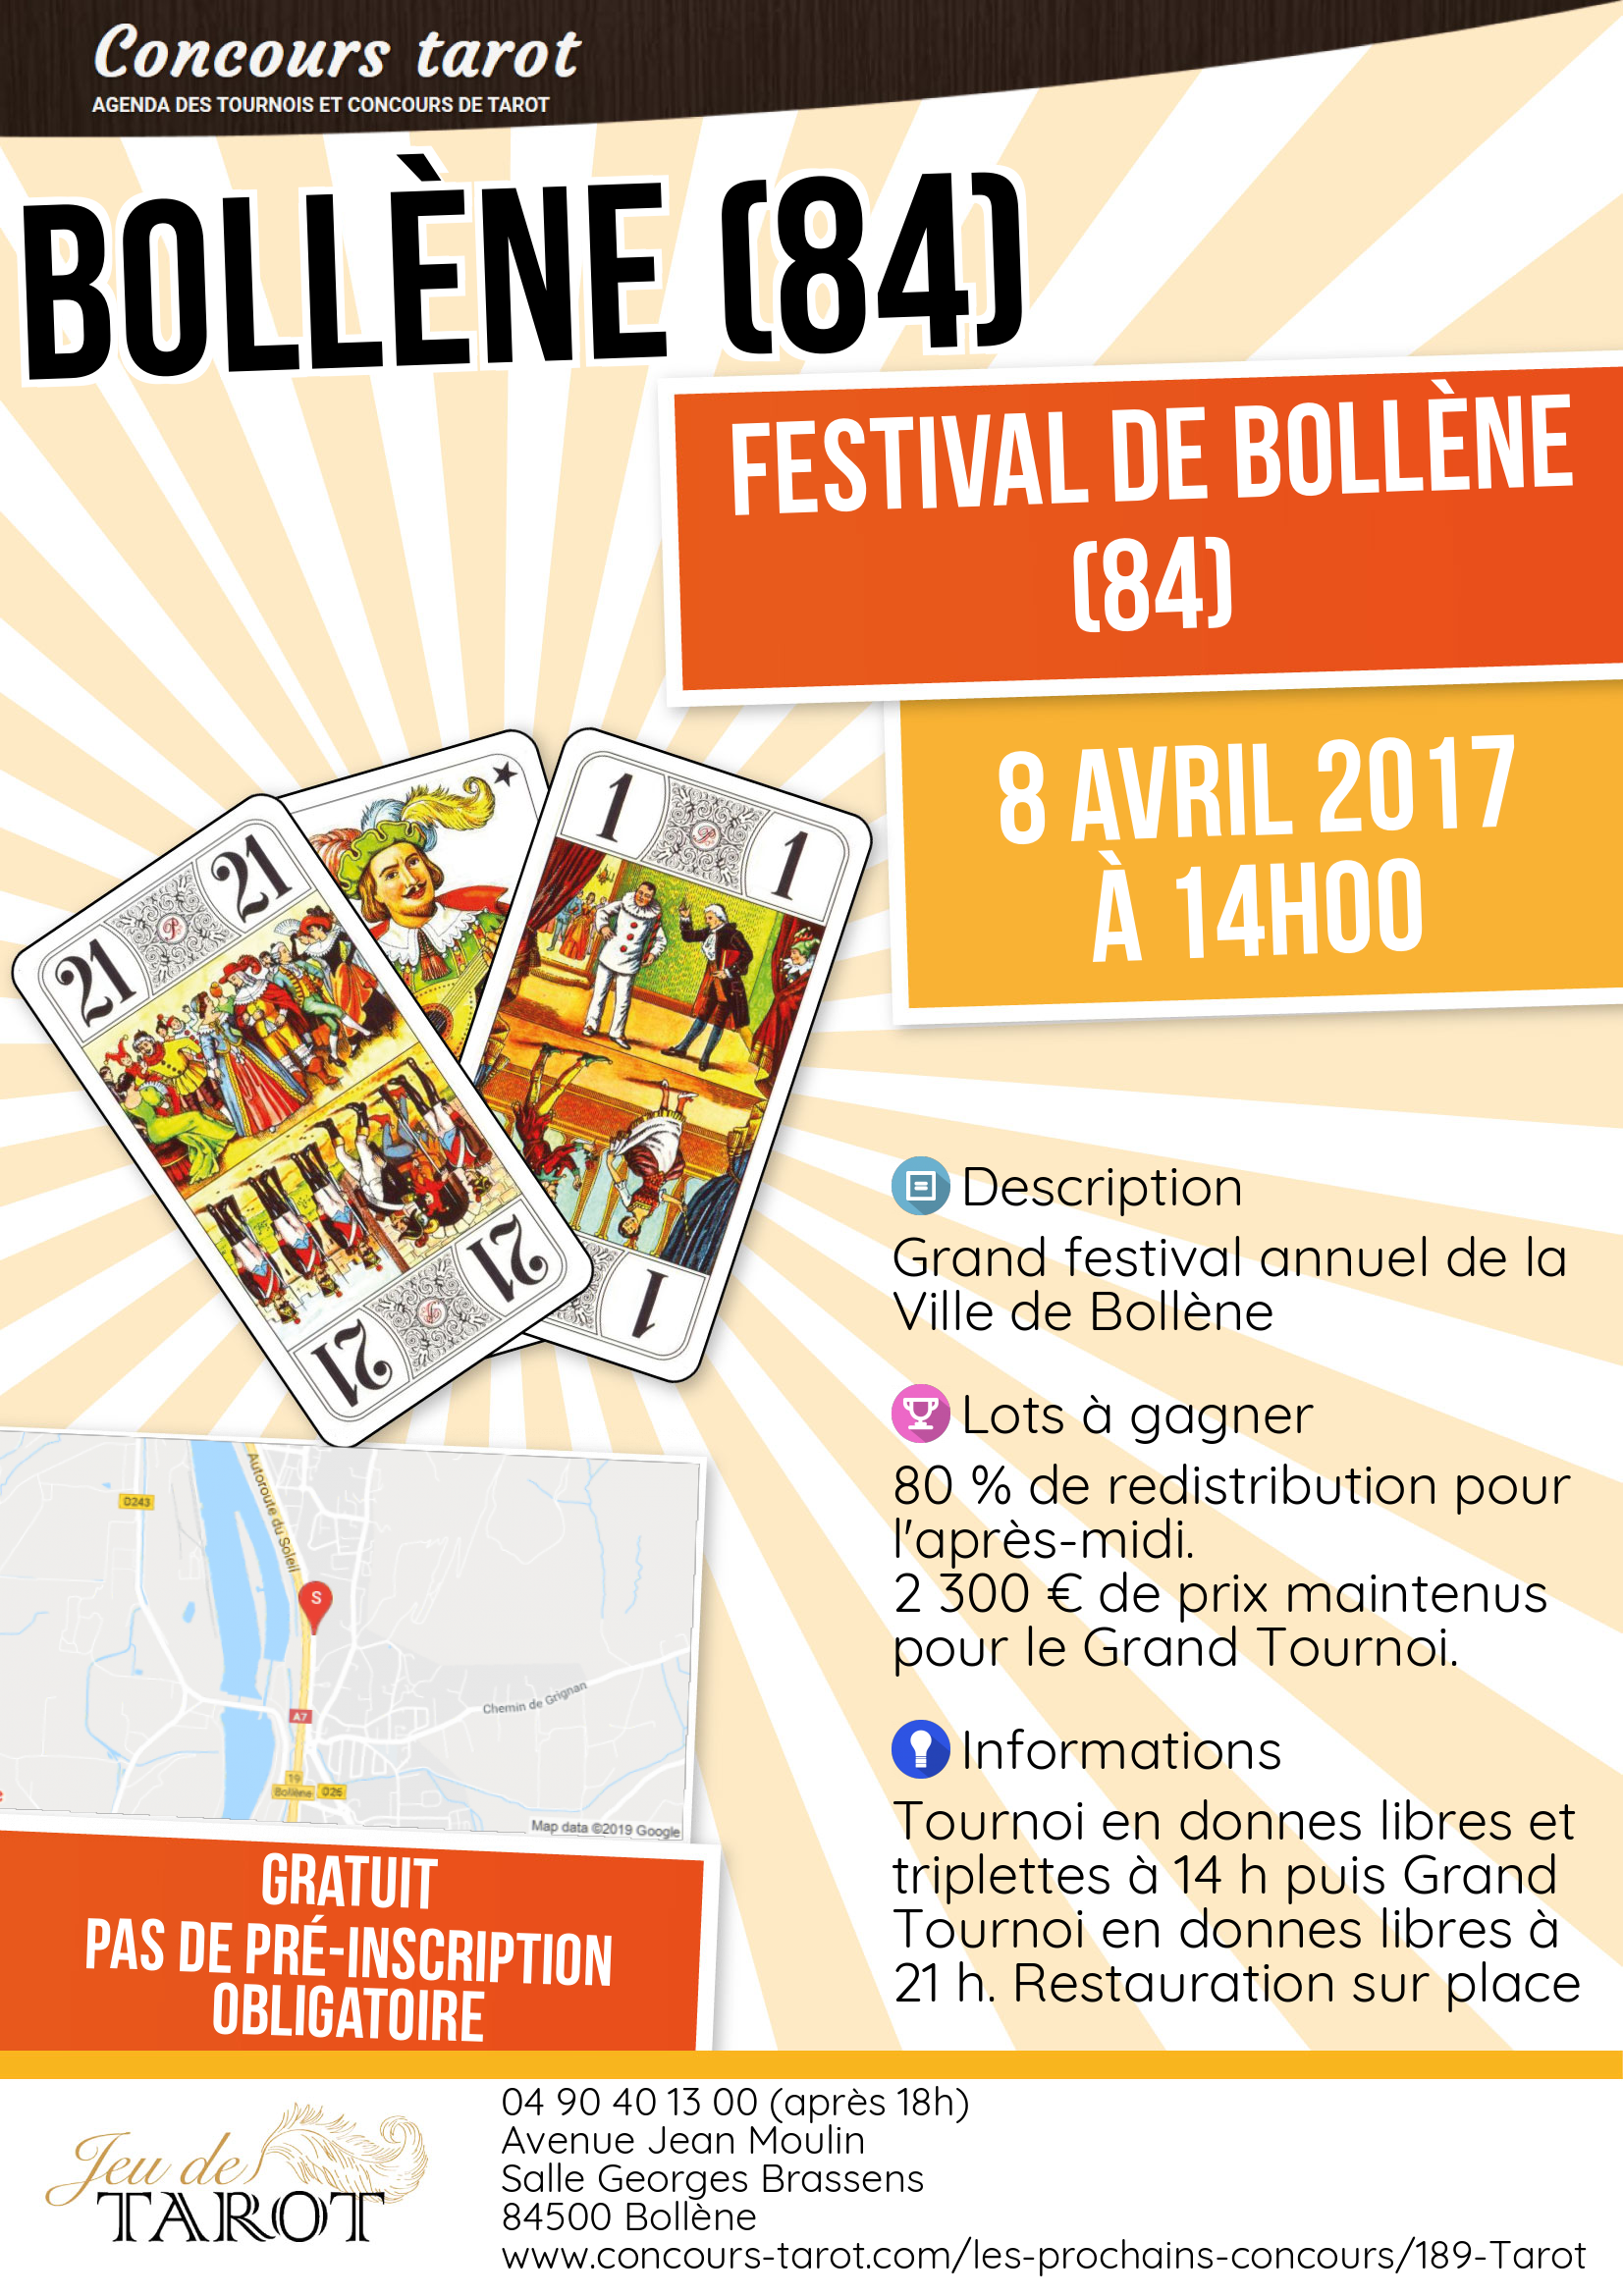 Festival de Bollene 84